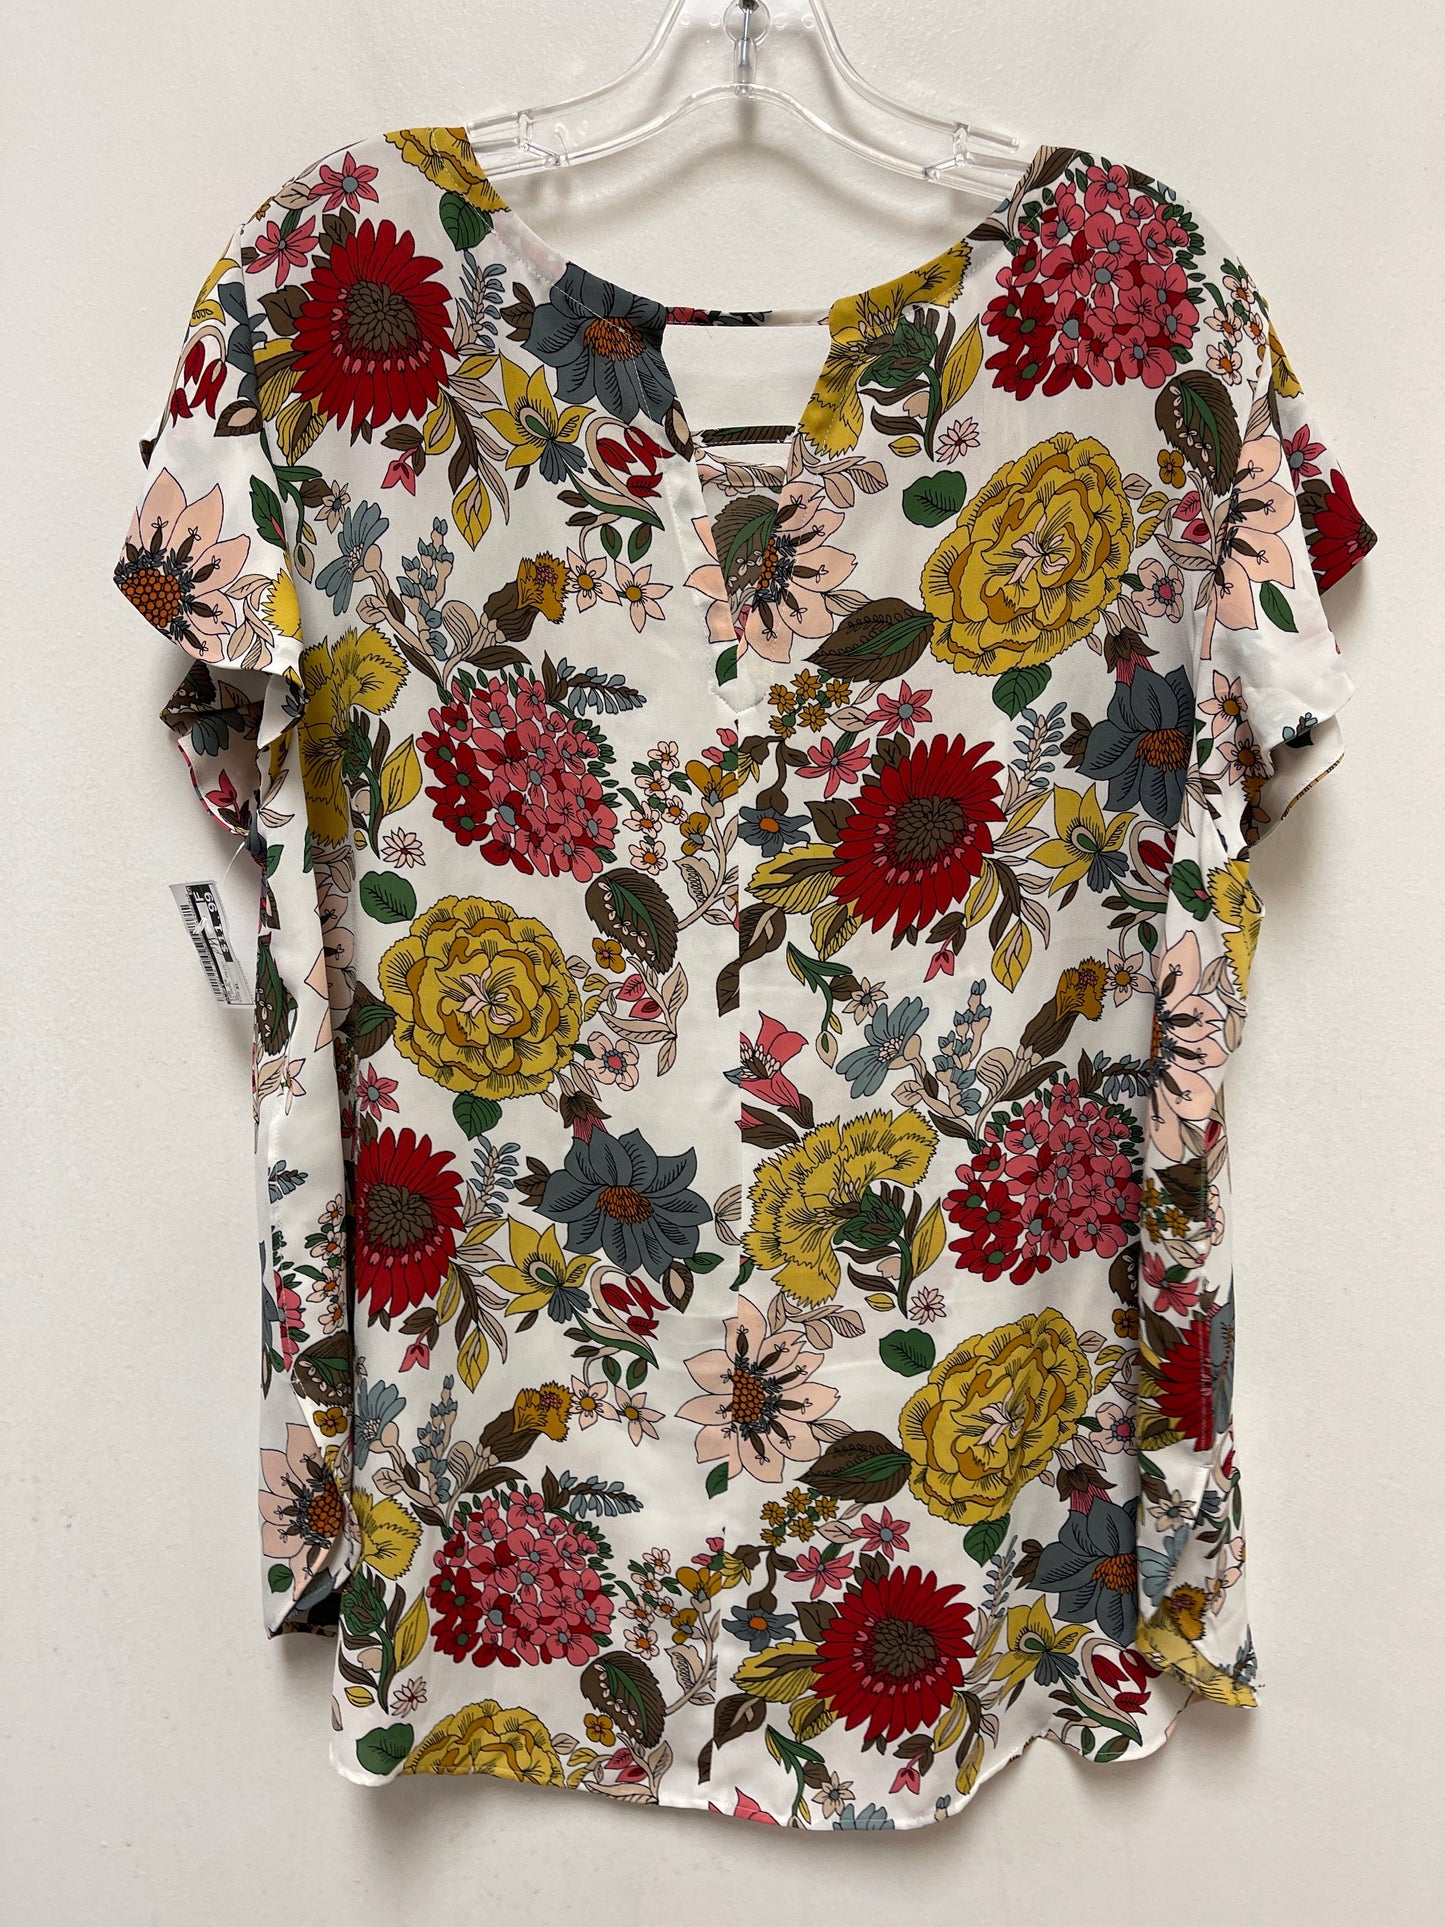 Floral Print Top Short Sleeve Loft, Size Xl